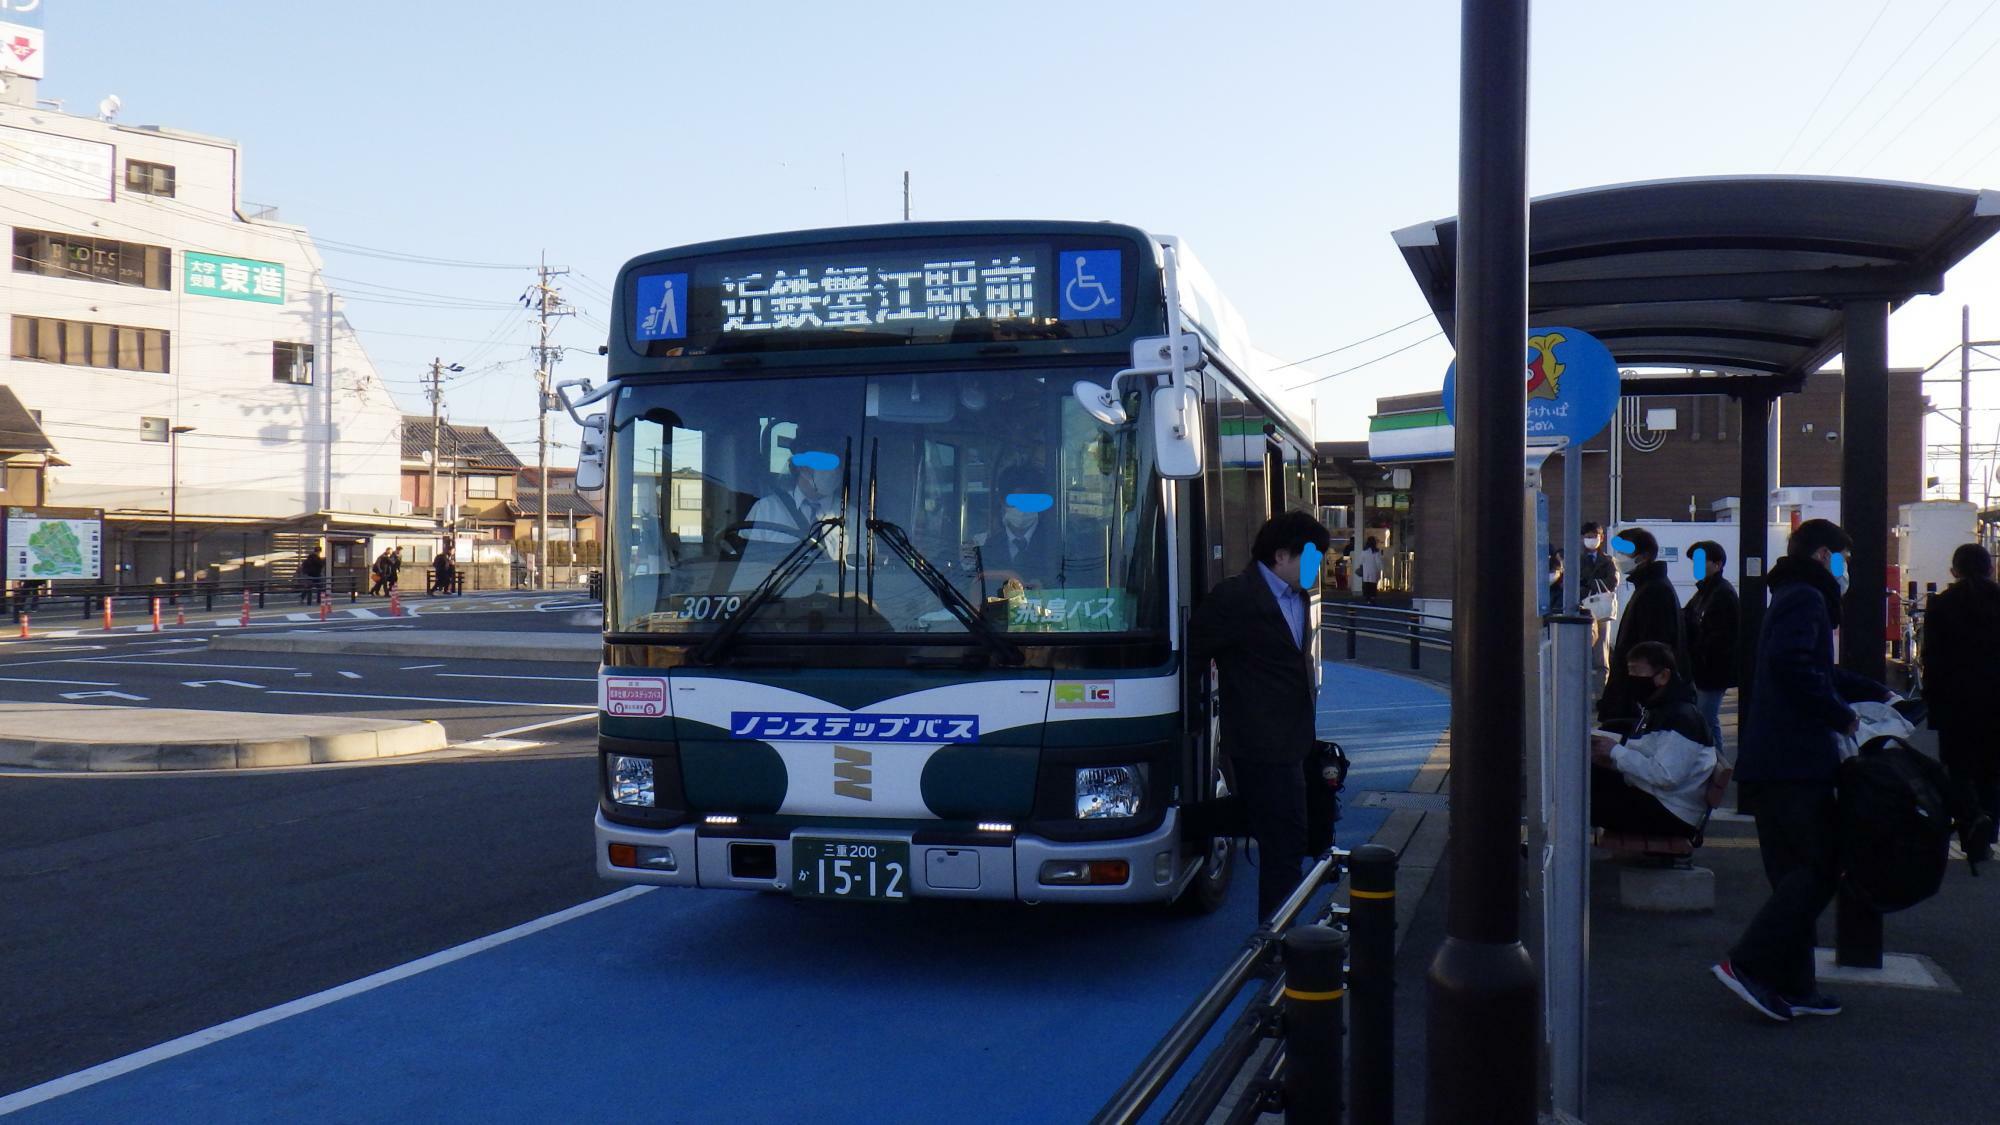 近鉄蟹江駅からバスに乗る。近鉄蟹江行と表示されているが、直ぐに飛島村への行先表示に変わった。なお、この記事の写真は全て令和6年1月29～30日に筆者撮影。